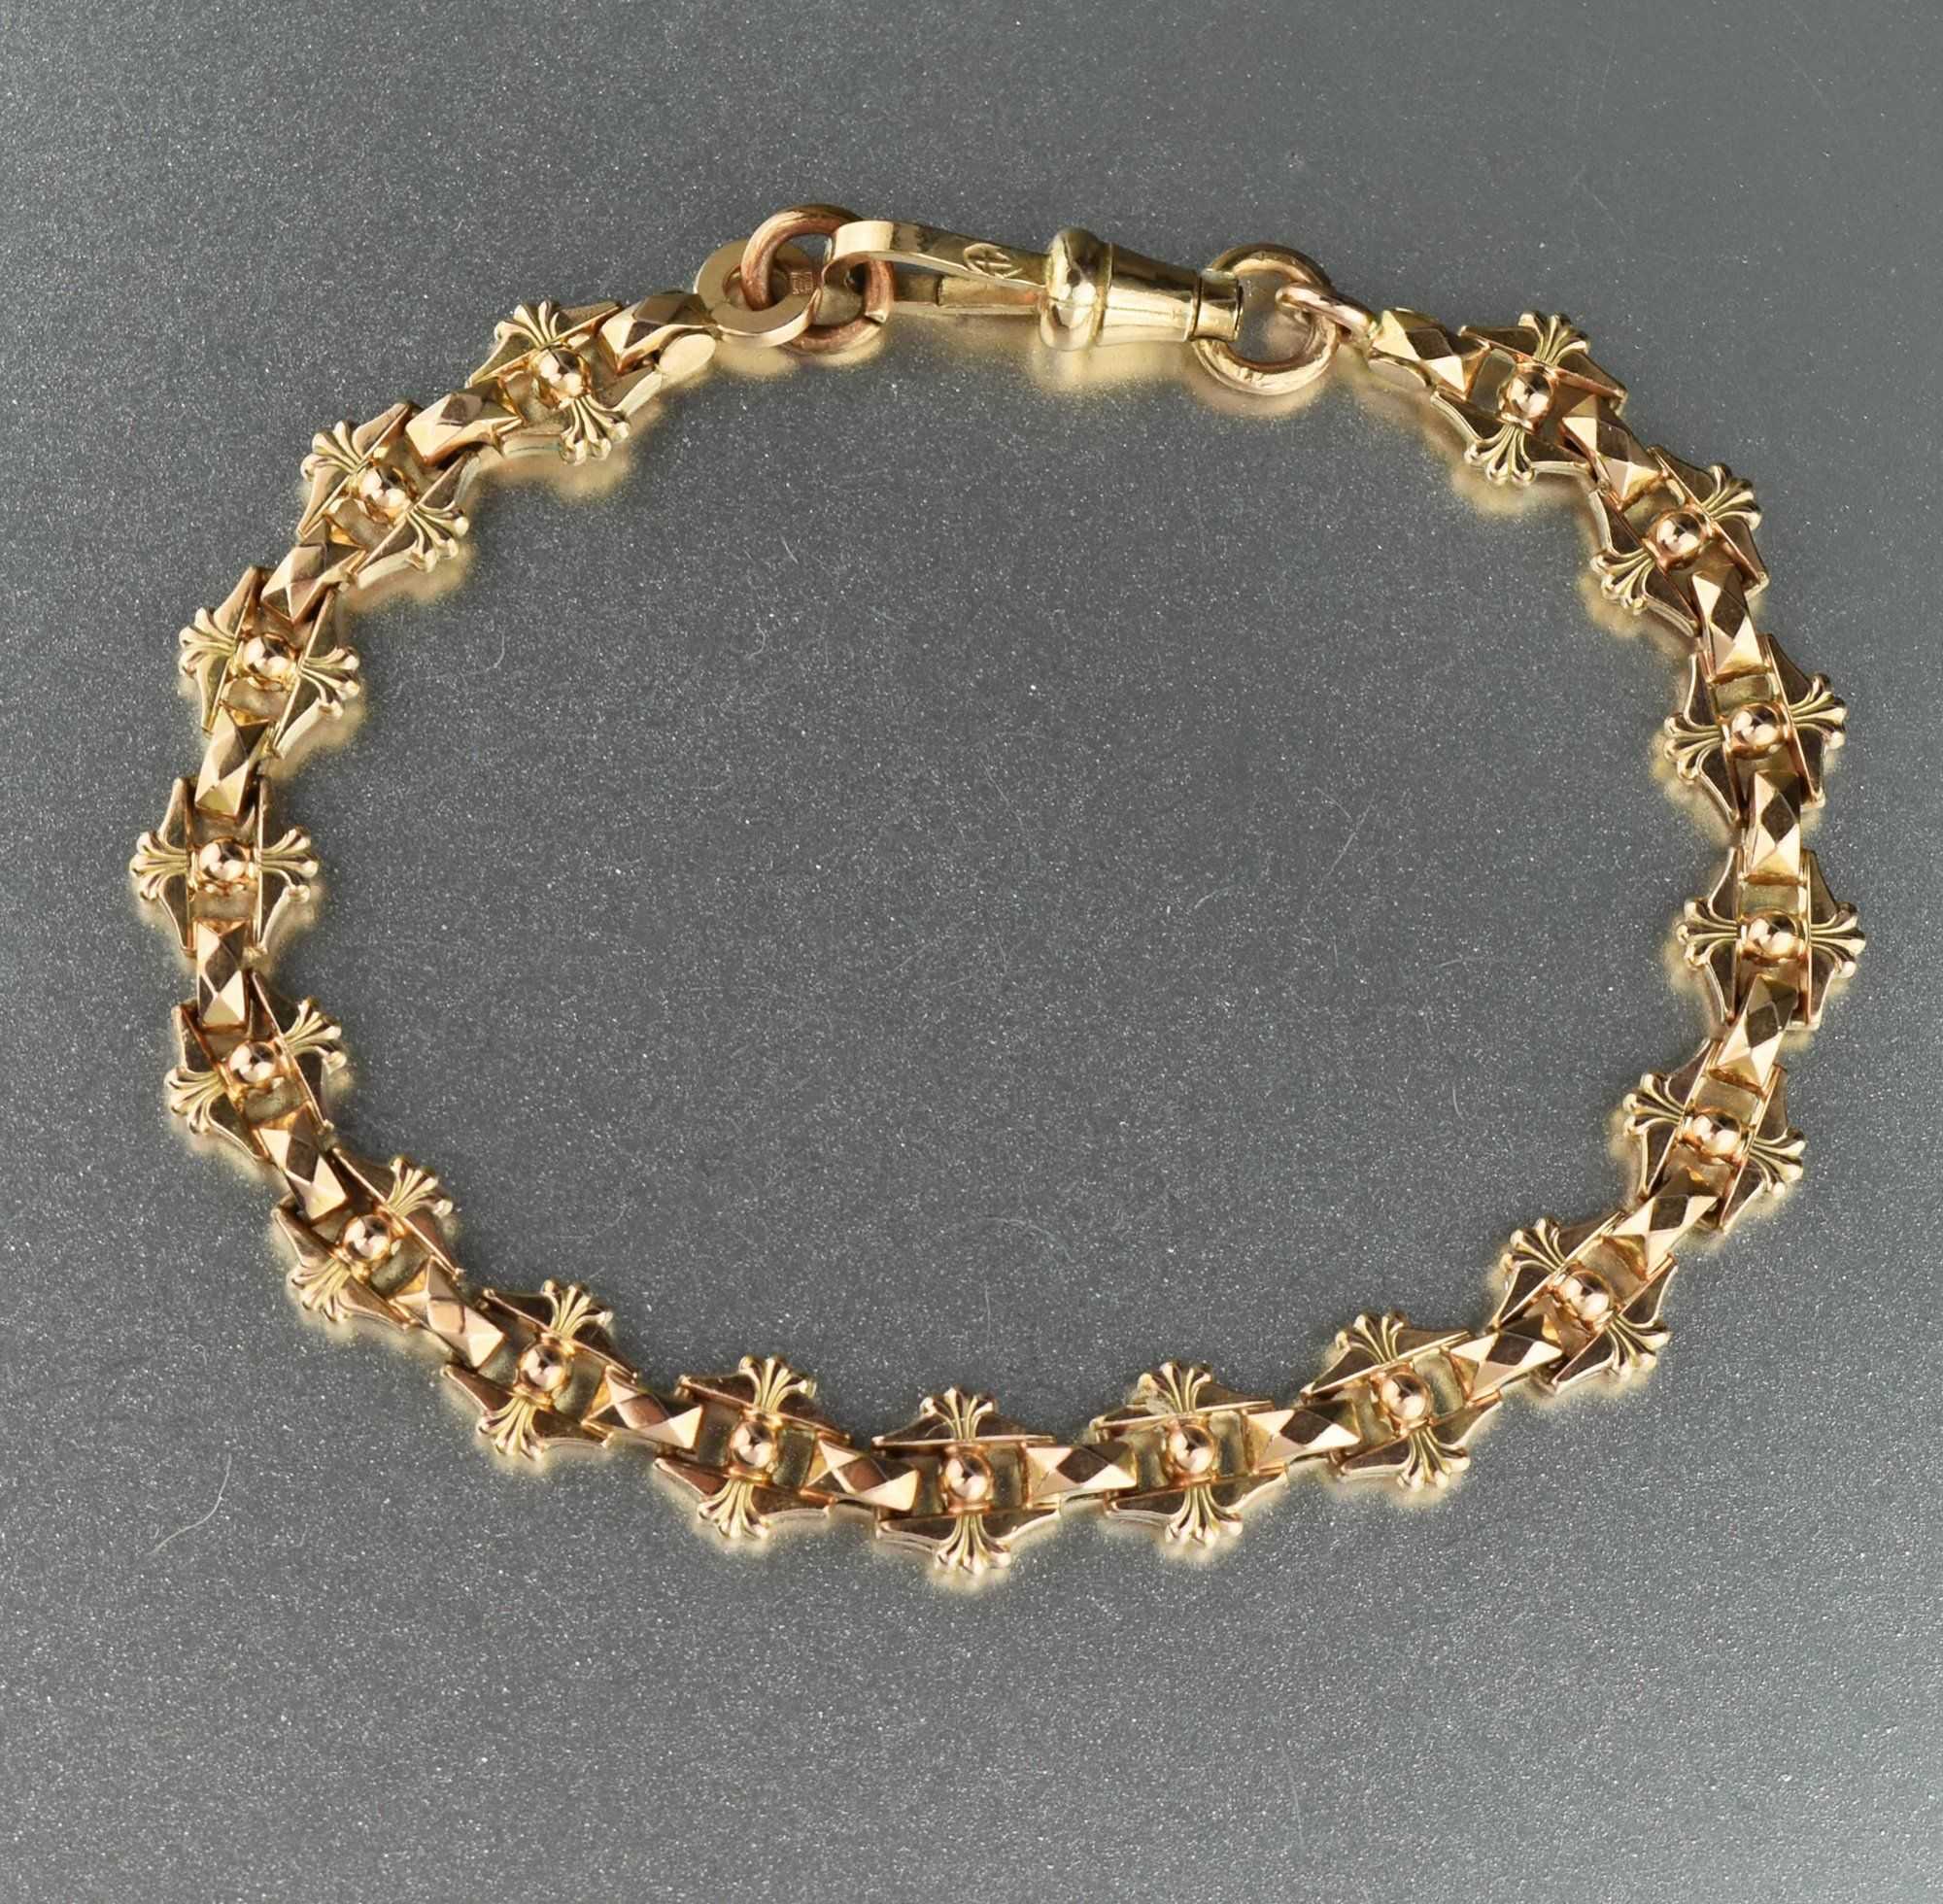 Antique Edwardian Fancy Link Chain Bracelet 1900s Boylerpf